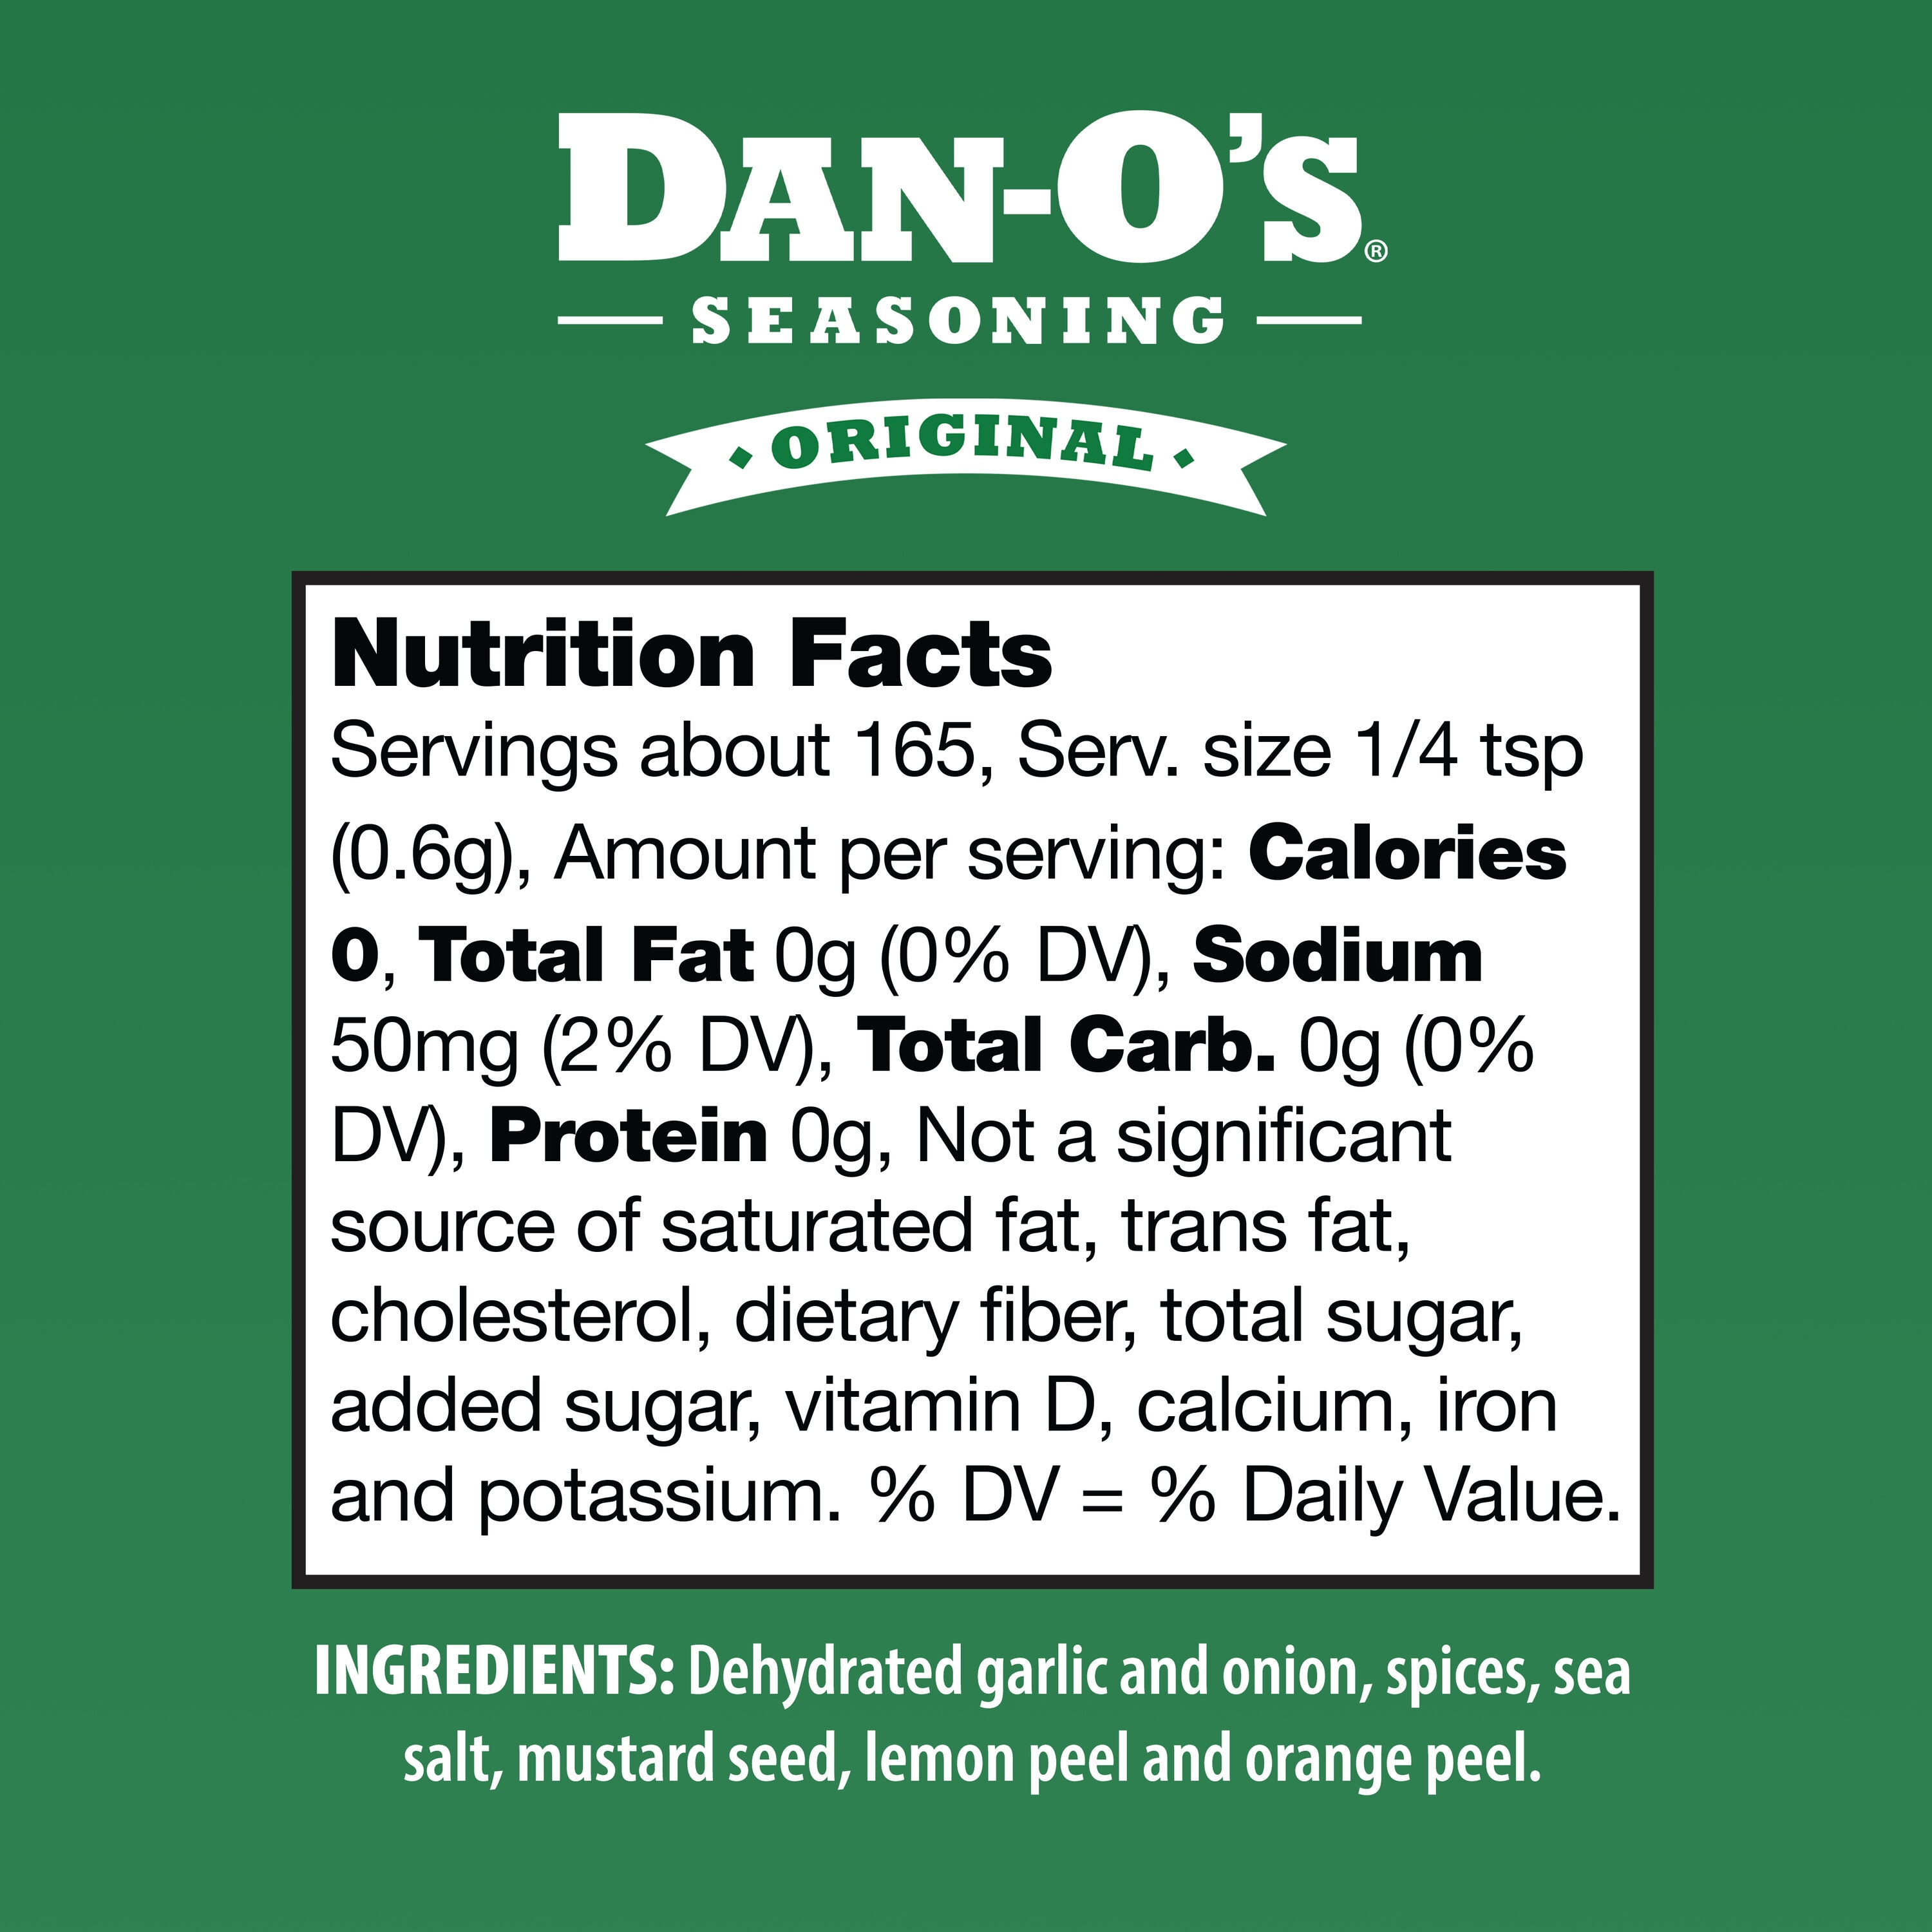 Dan-O's Seasoning 3.5-oz Original Seasoning Blend in the Dry